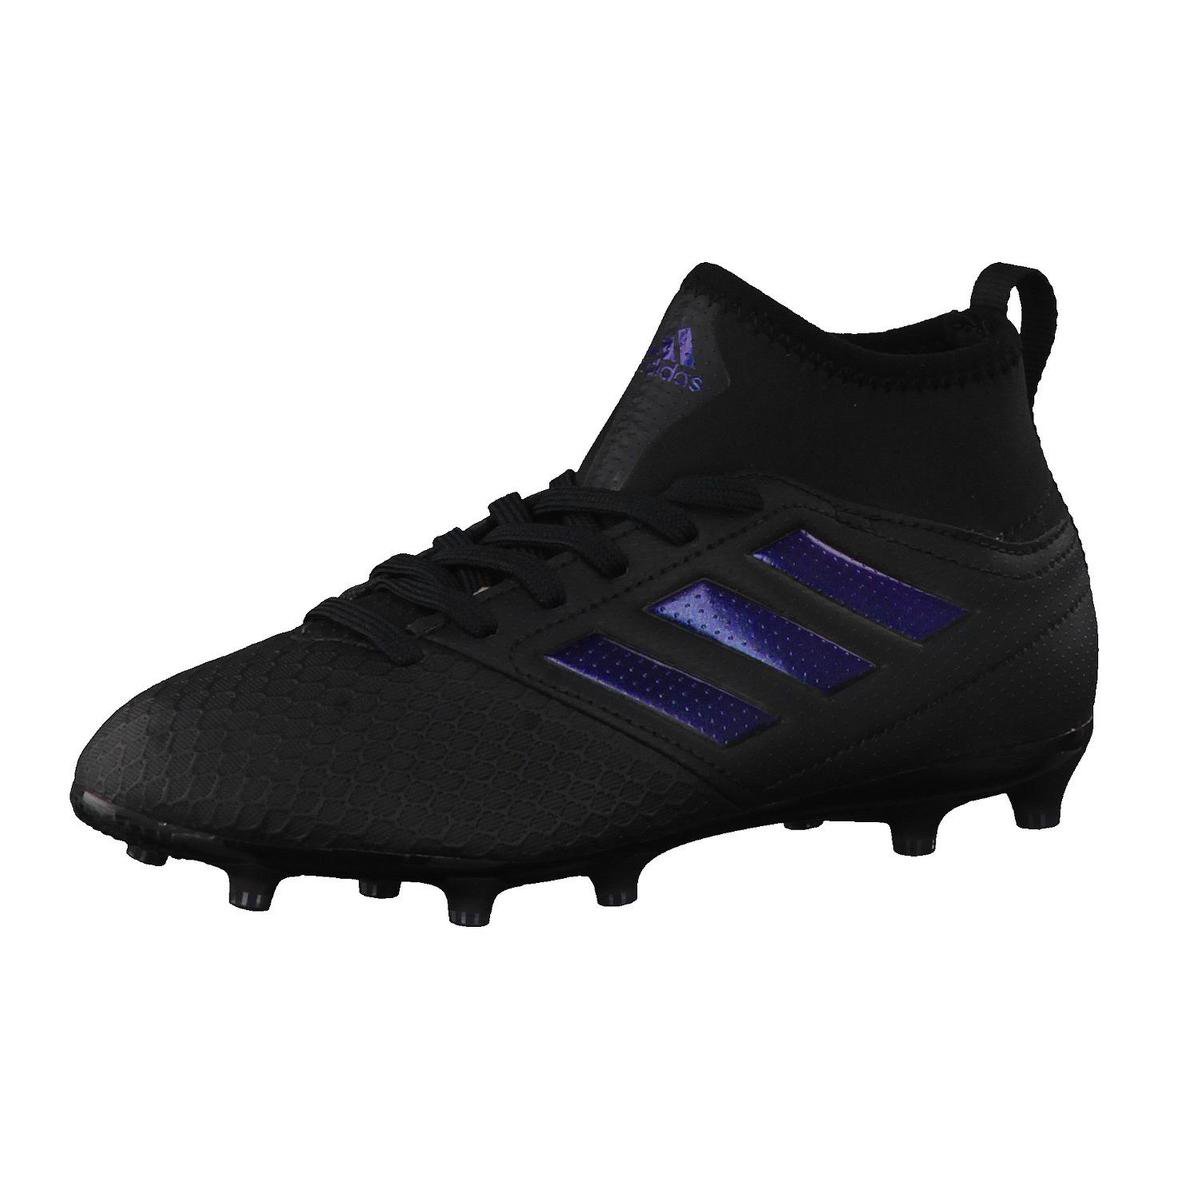 Adidas Ace 17.3 FG JR Voetbalschoenen - Zwart/blauw - Maat 35 2/3 | bol.com